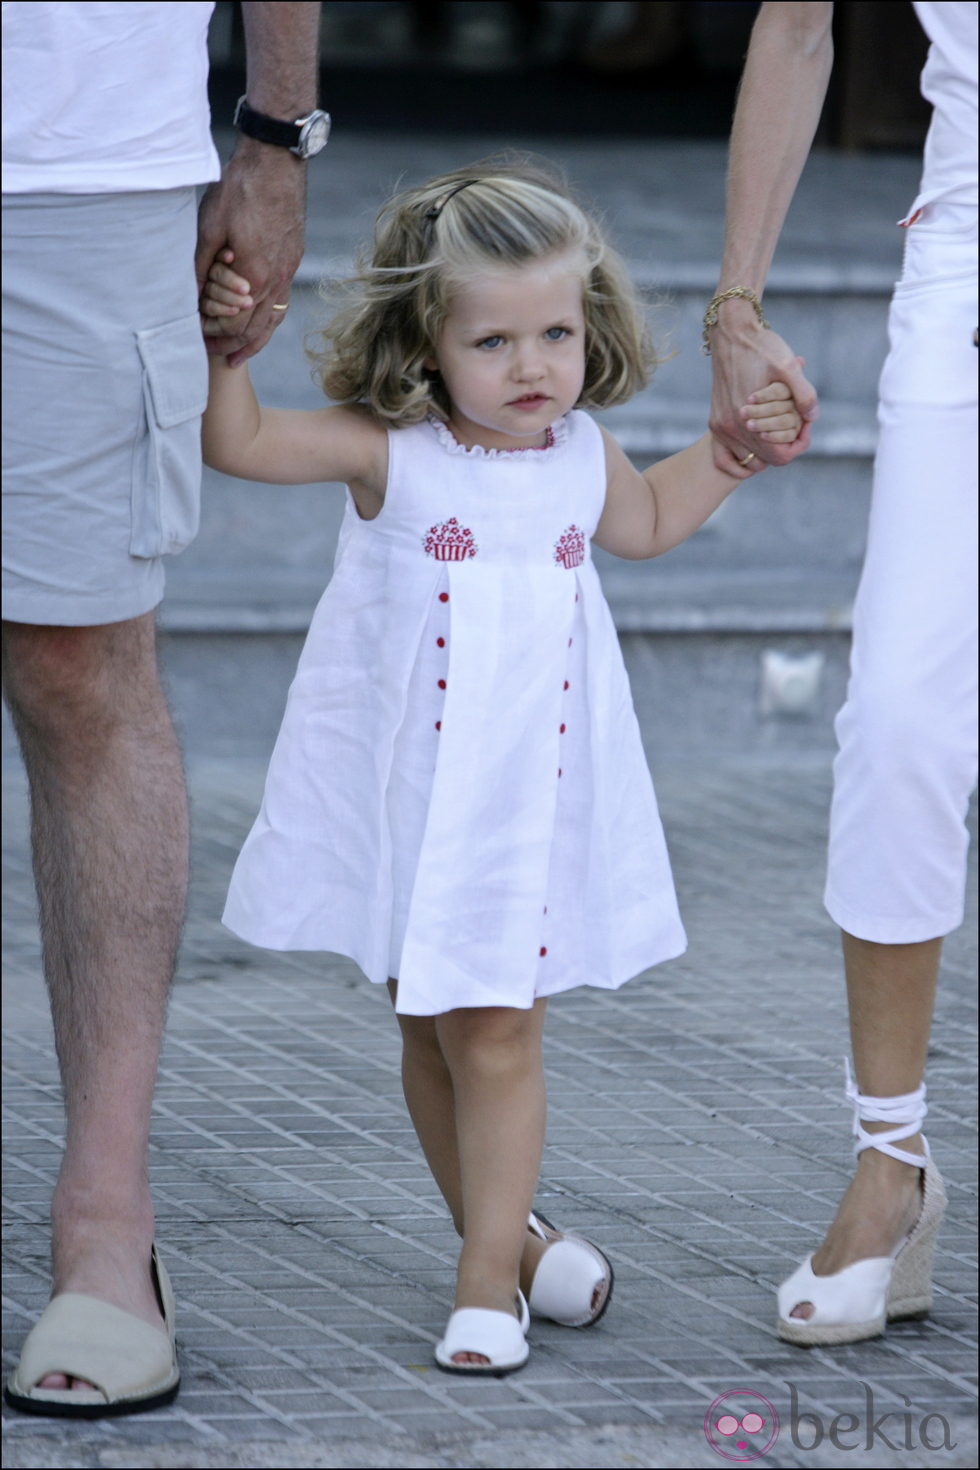 La Infanta Leonor con un vestido blanco y menorquinas